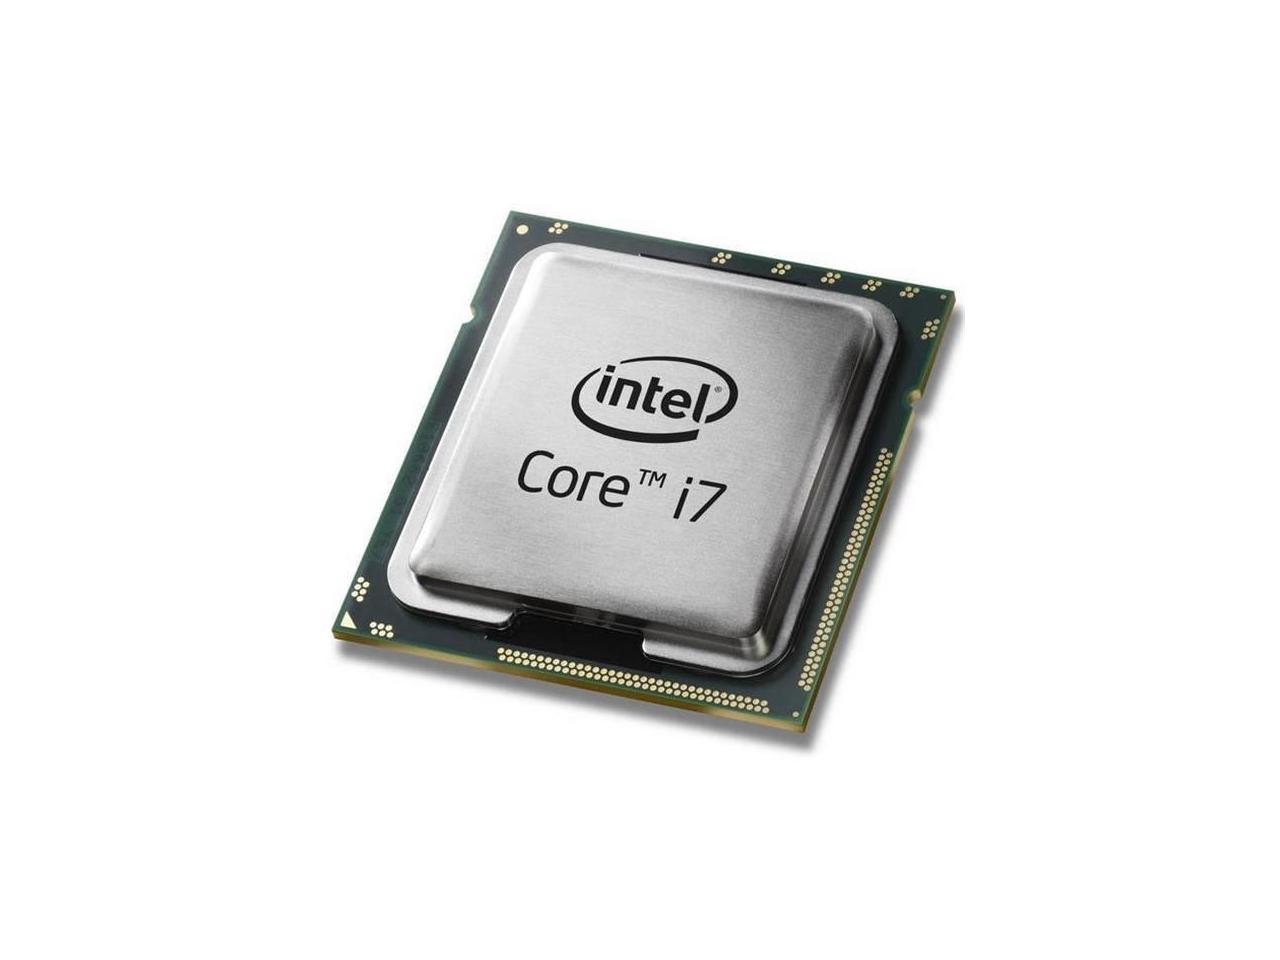 Intel Core i7 2nd Gen - Core i7-2600 Sandy Bridge Quad-Core 3.4GHz 